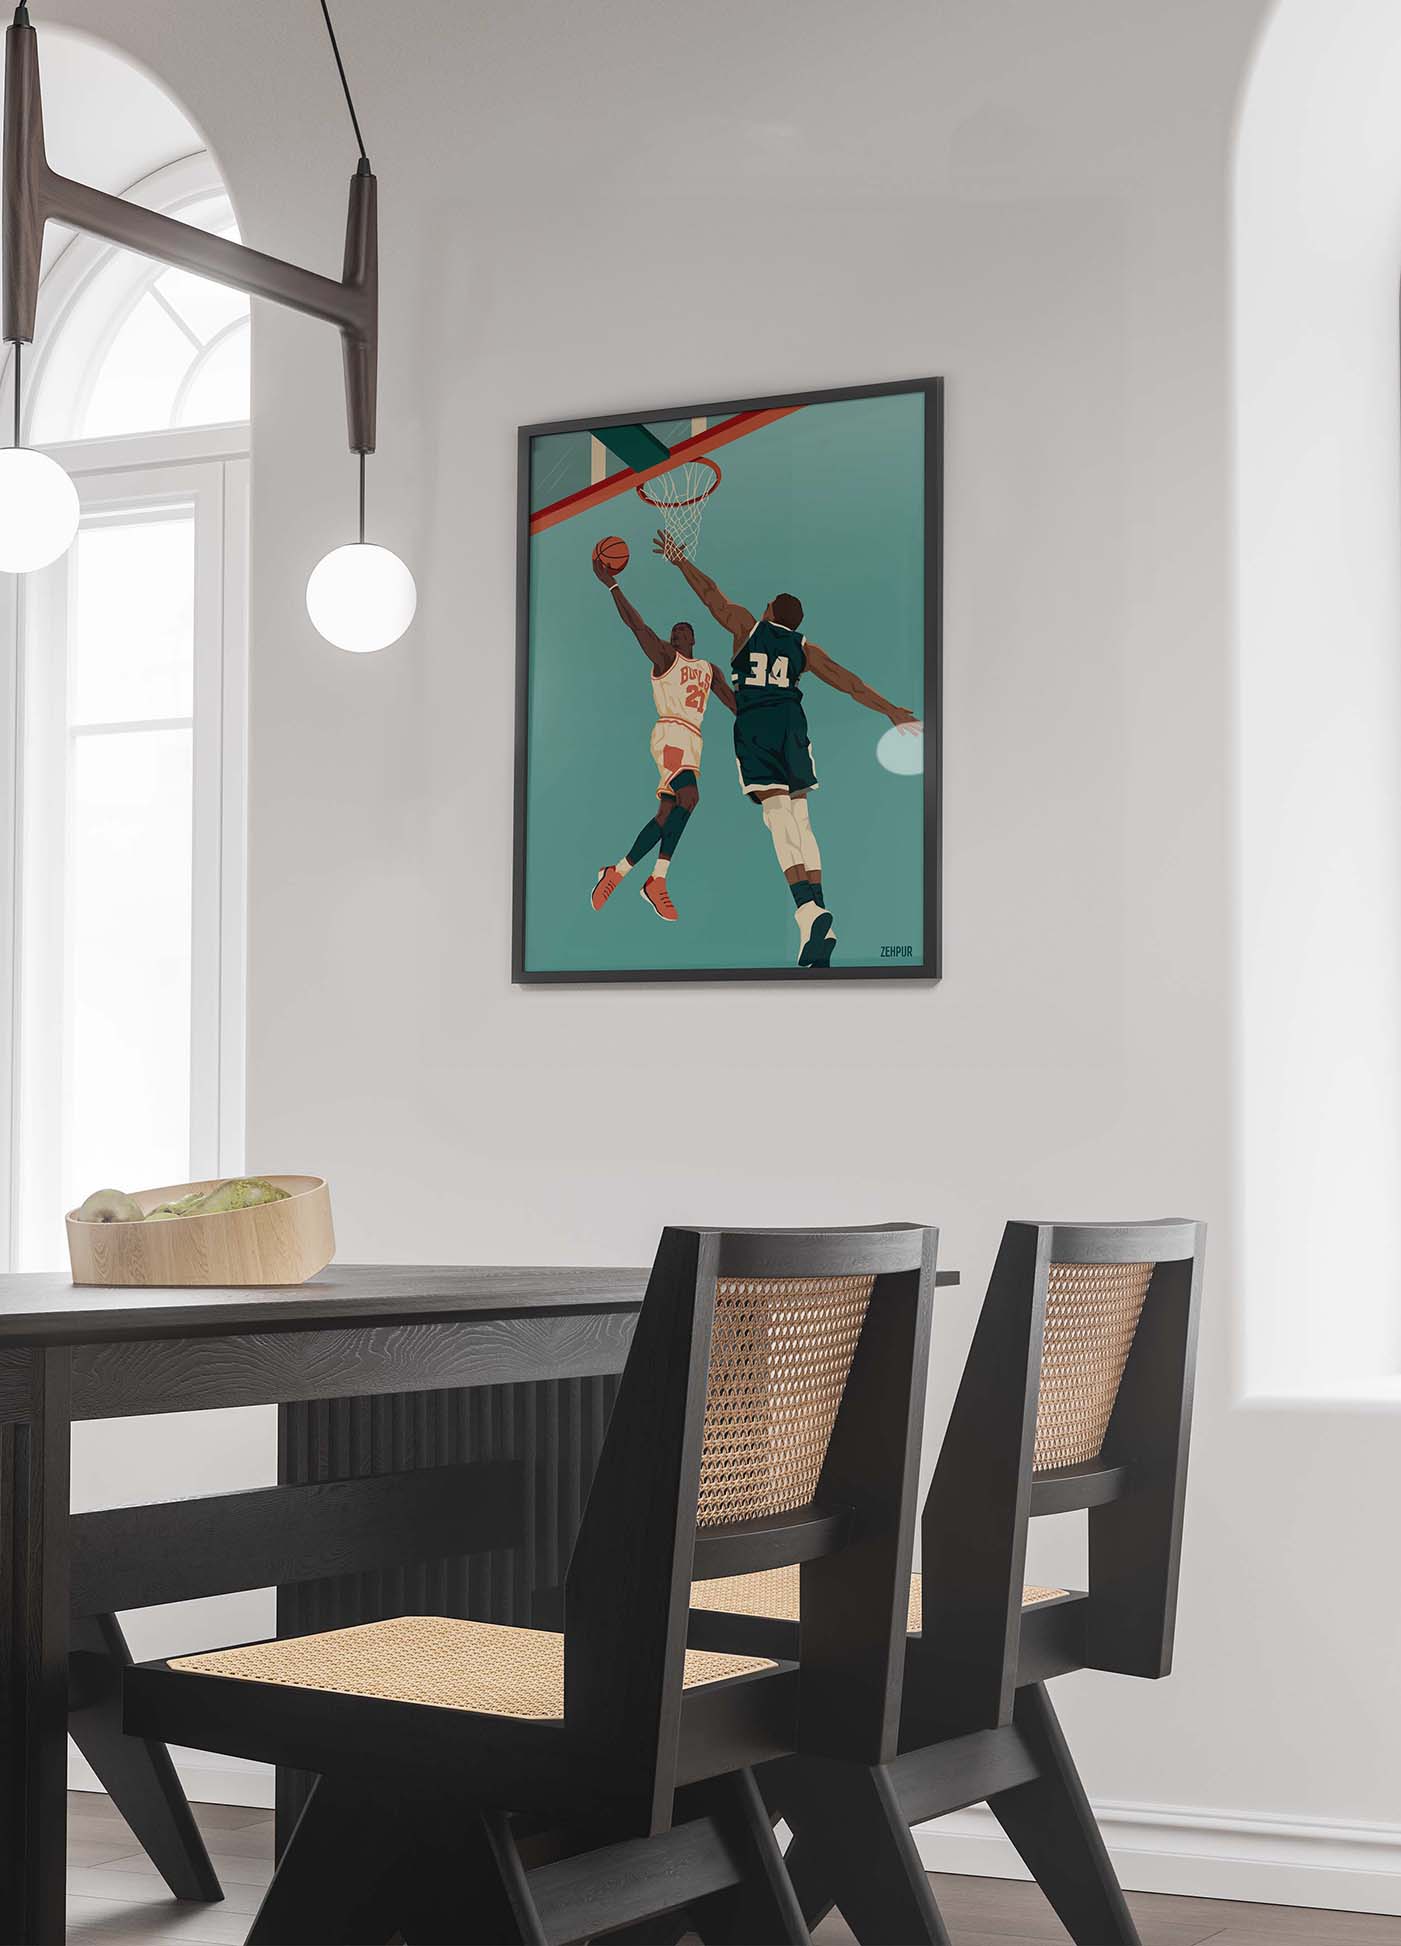 Décoration intérieure d'une salle à manger contemporaine avec une grande affiche de basketball encadrée au mur. La pièce est meublée avec une table en bois foncé et des chaises assorties, éclairée naturellement par des fenêtres et des lampes suspendues.